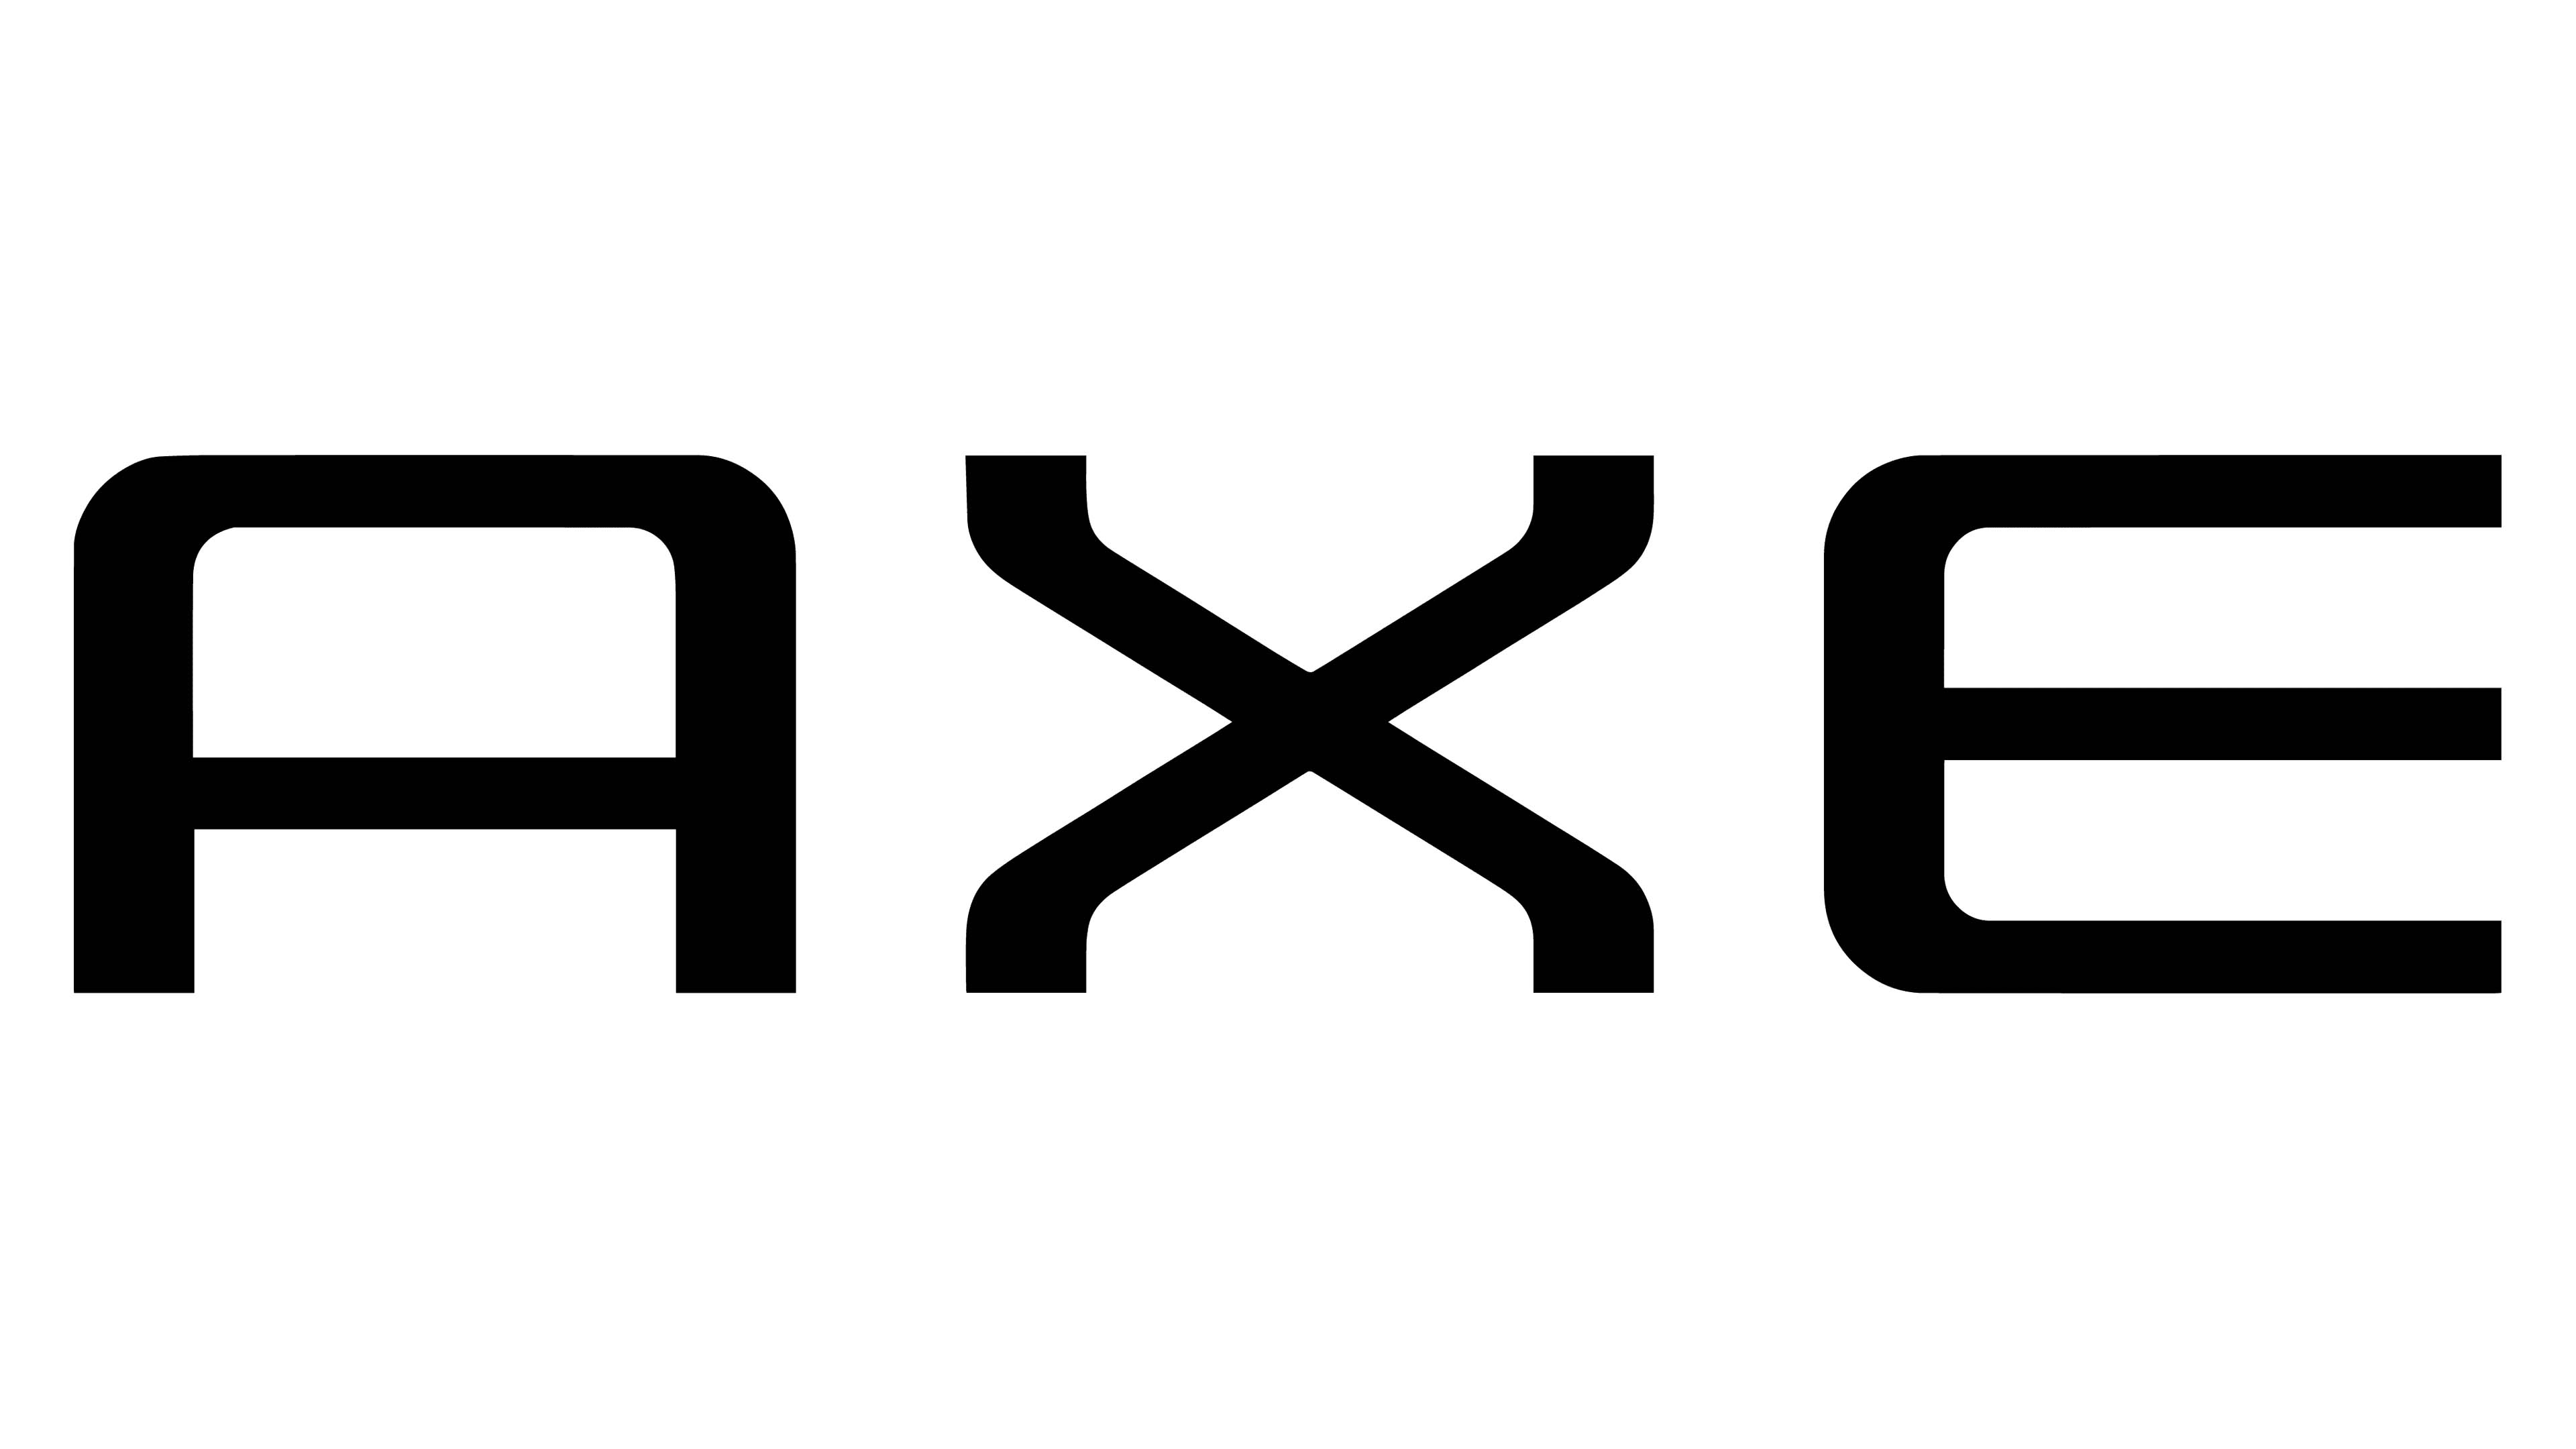 Mẫu thiết kế logo thương hiệu công ty AXE